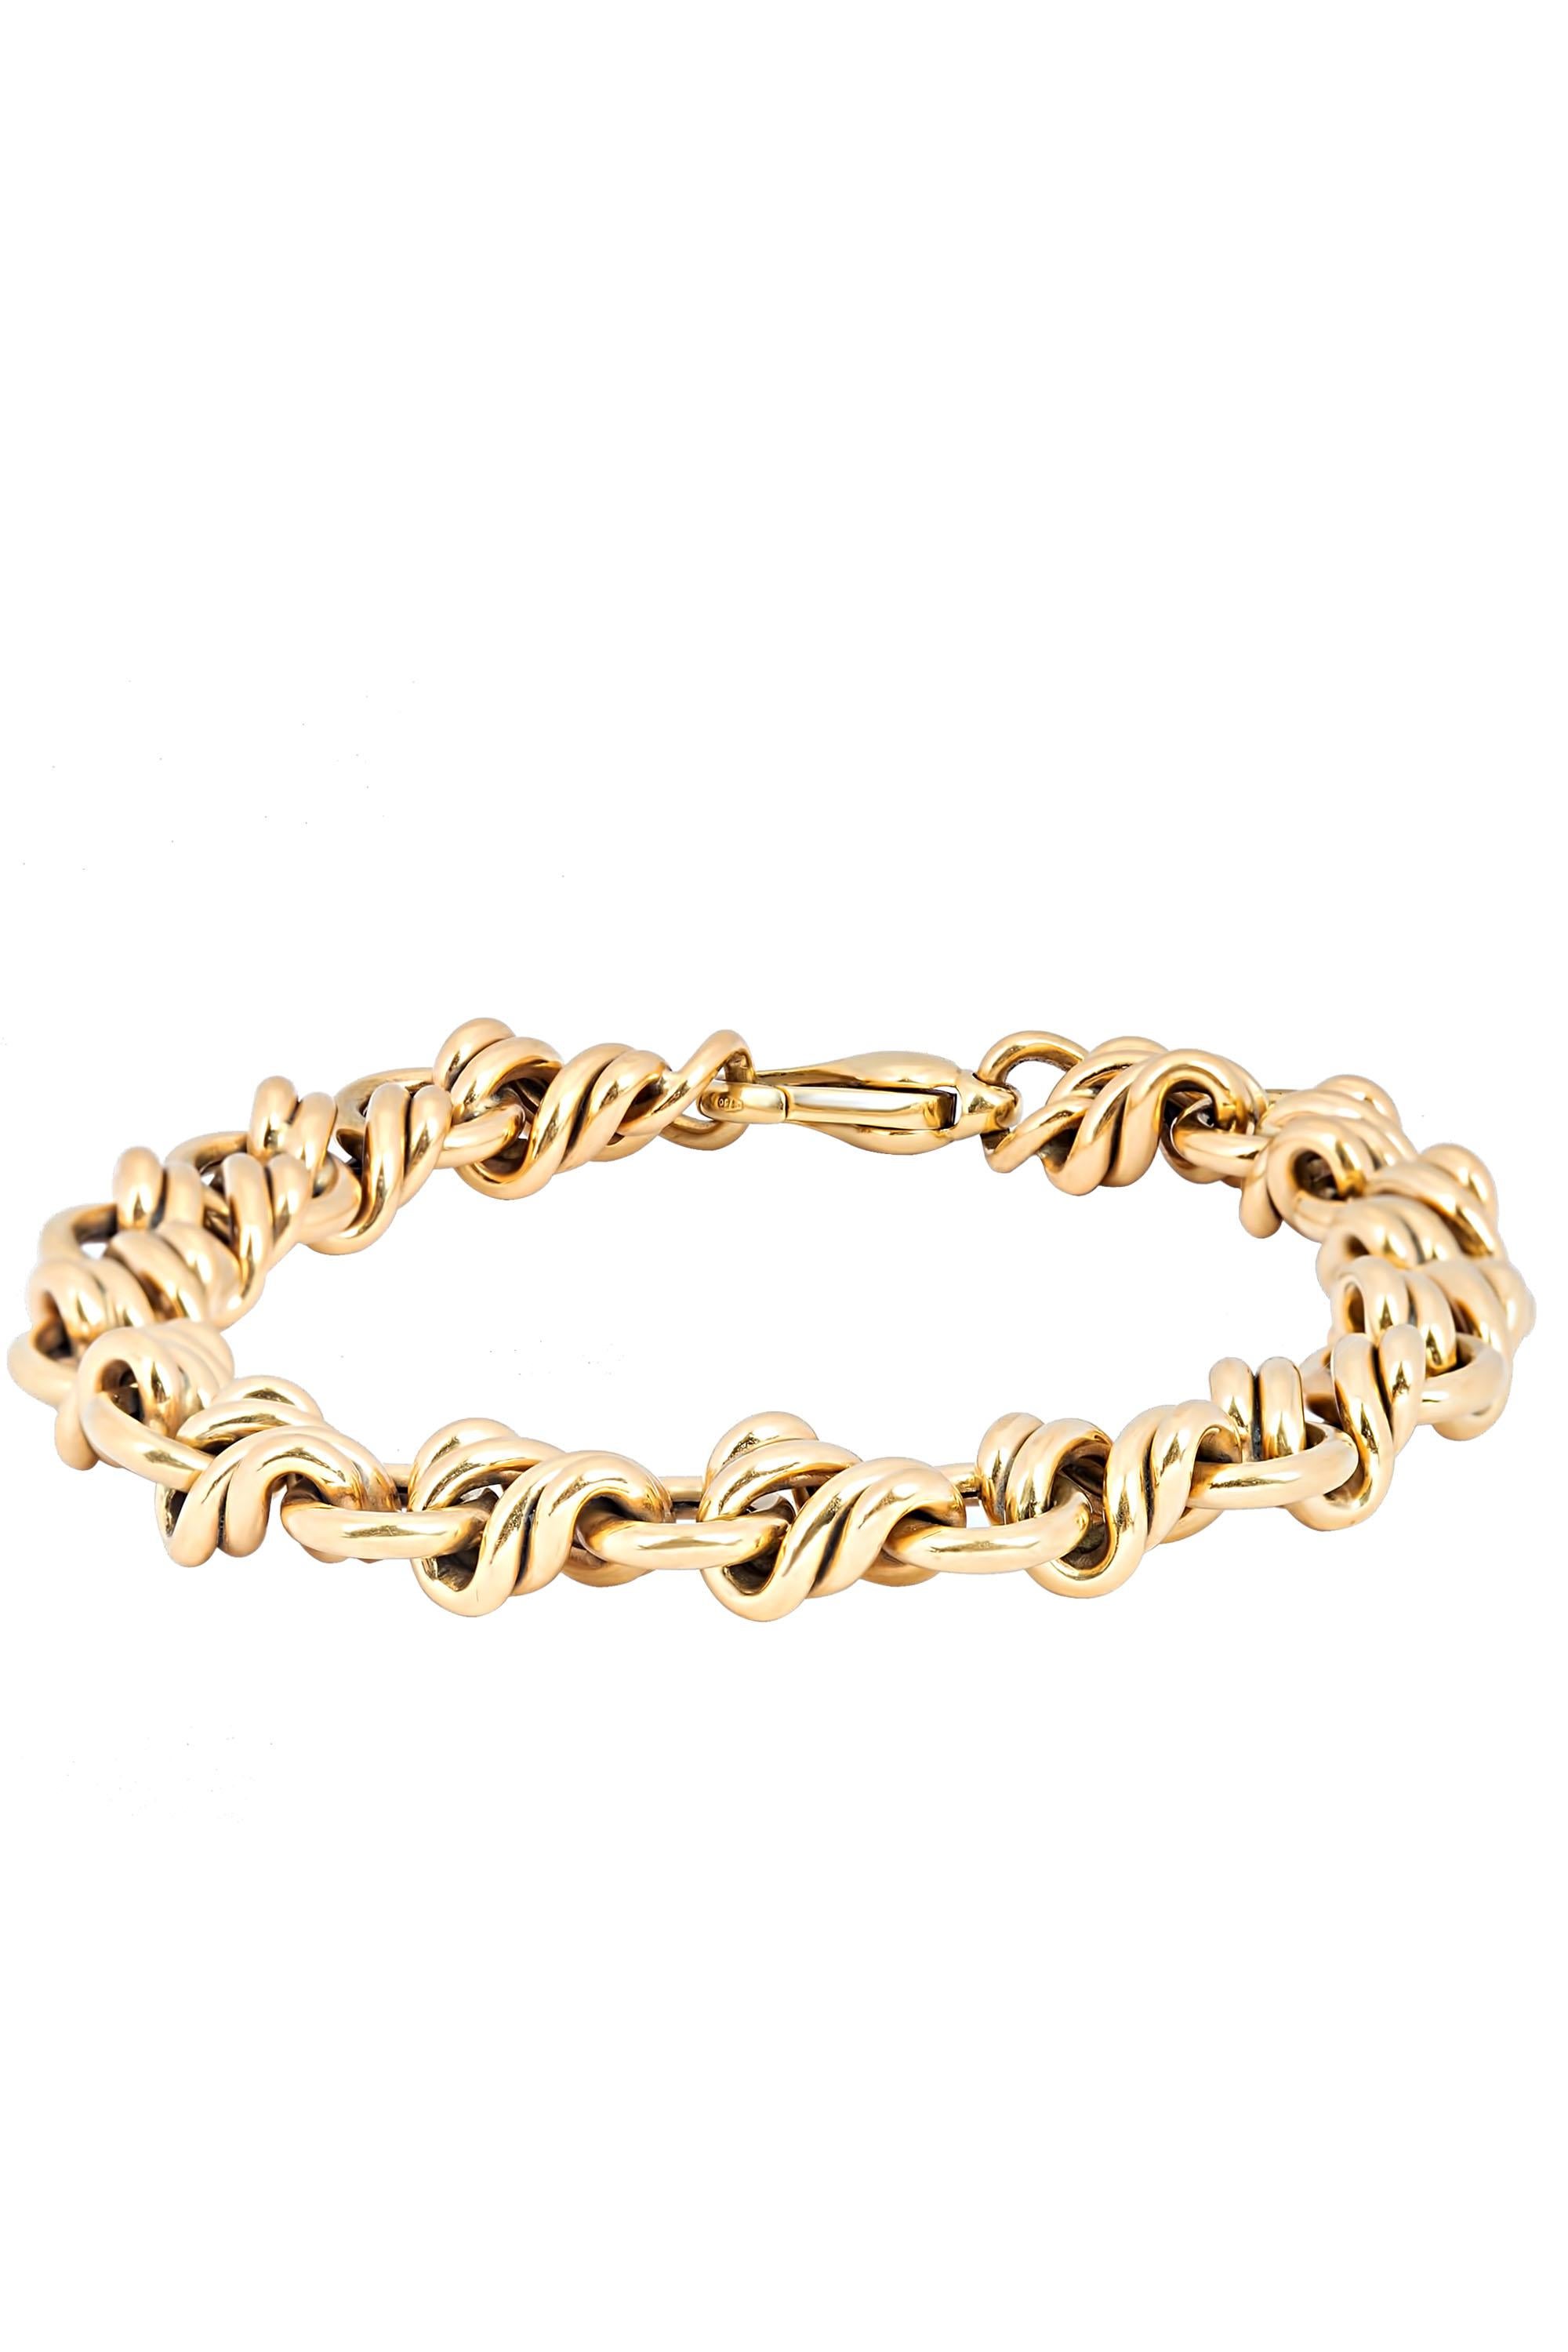 tiffany gold knot bracelet